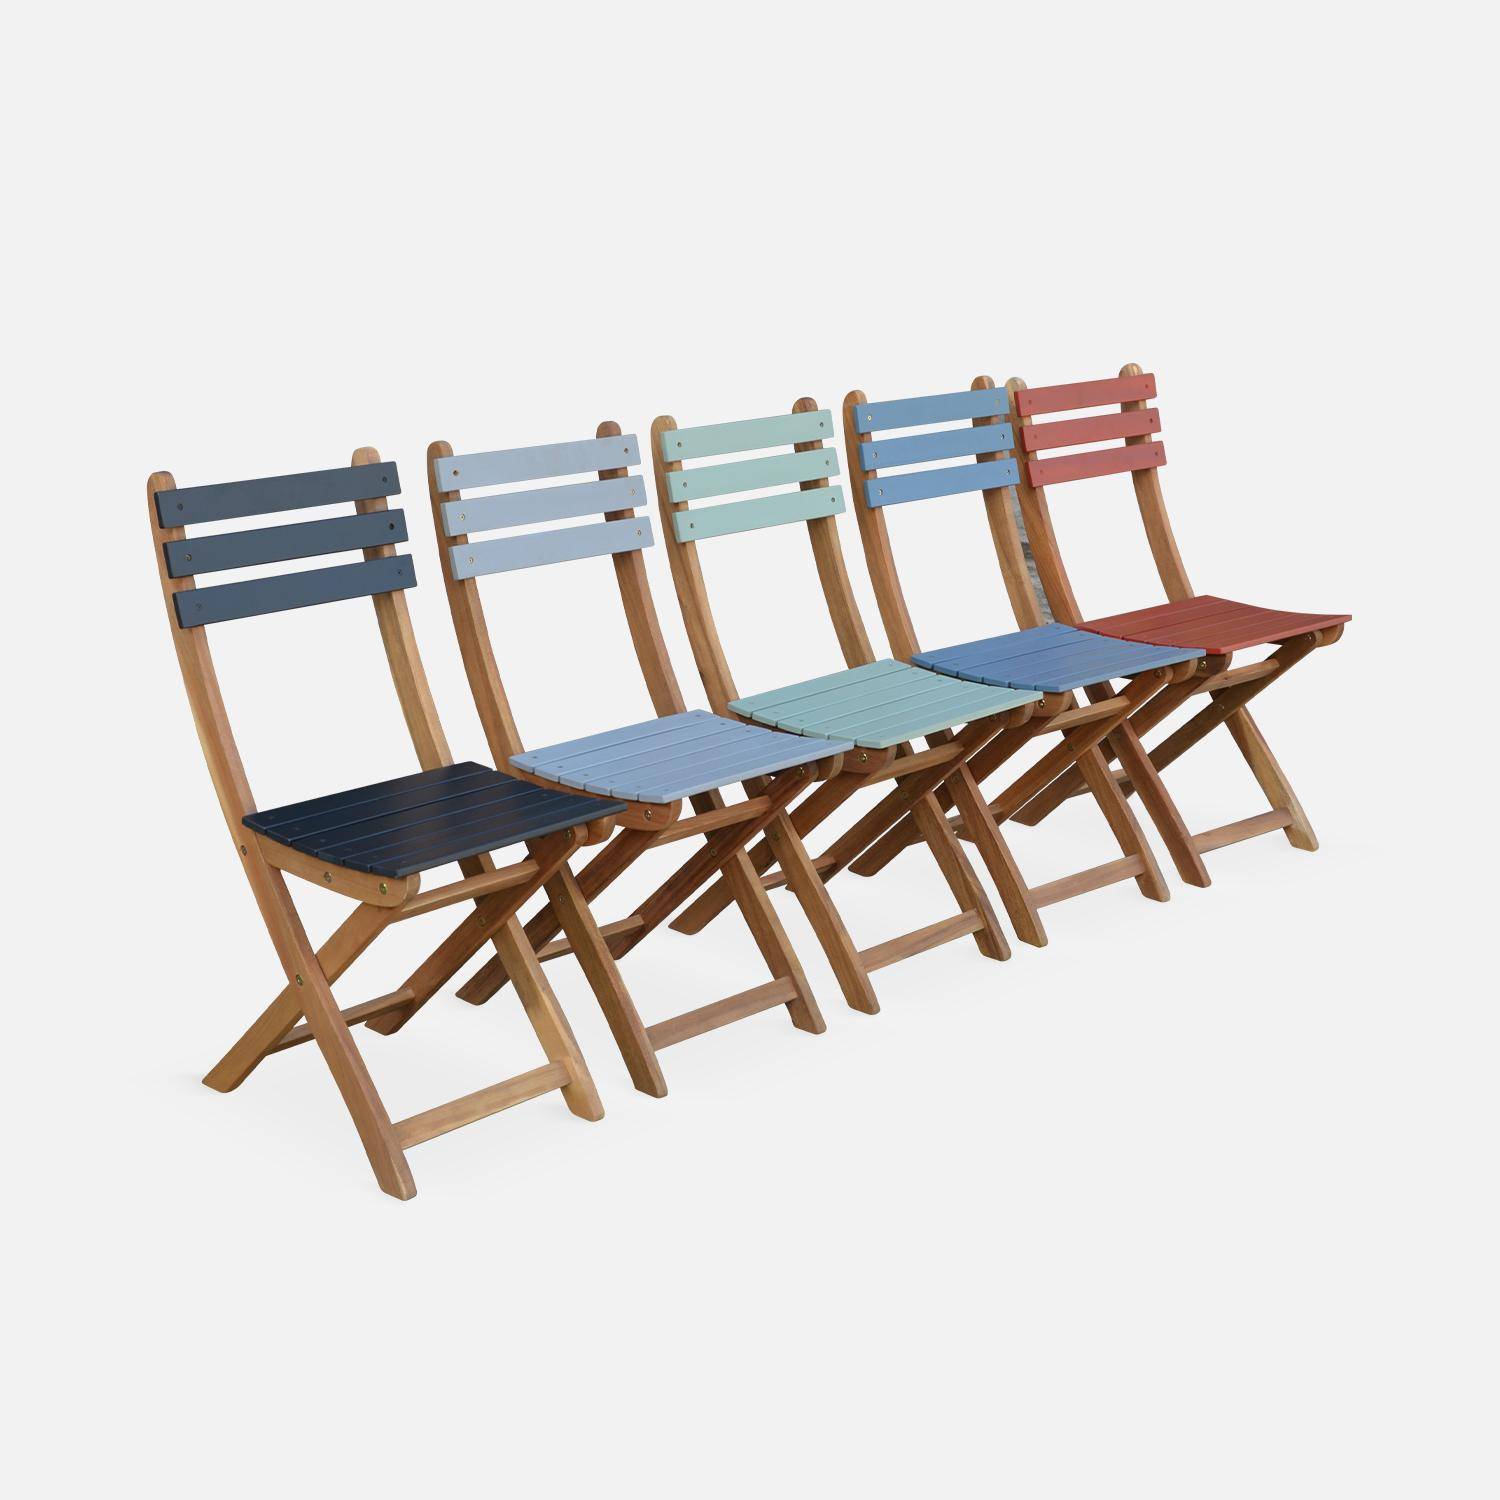 Conjunto de jardín de madera Bistro 60x60cm - Barcelona - terracota, mesa plegable cuadrada bicolor con 2 sillas plegables, acacia Photo5